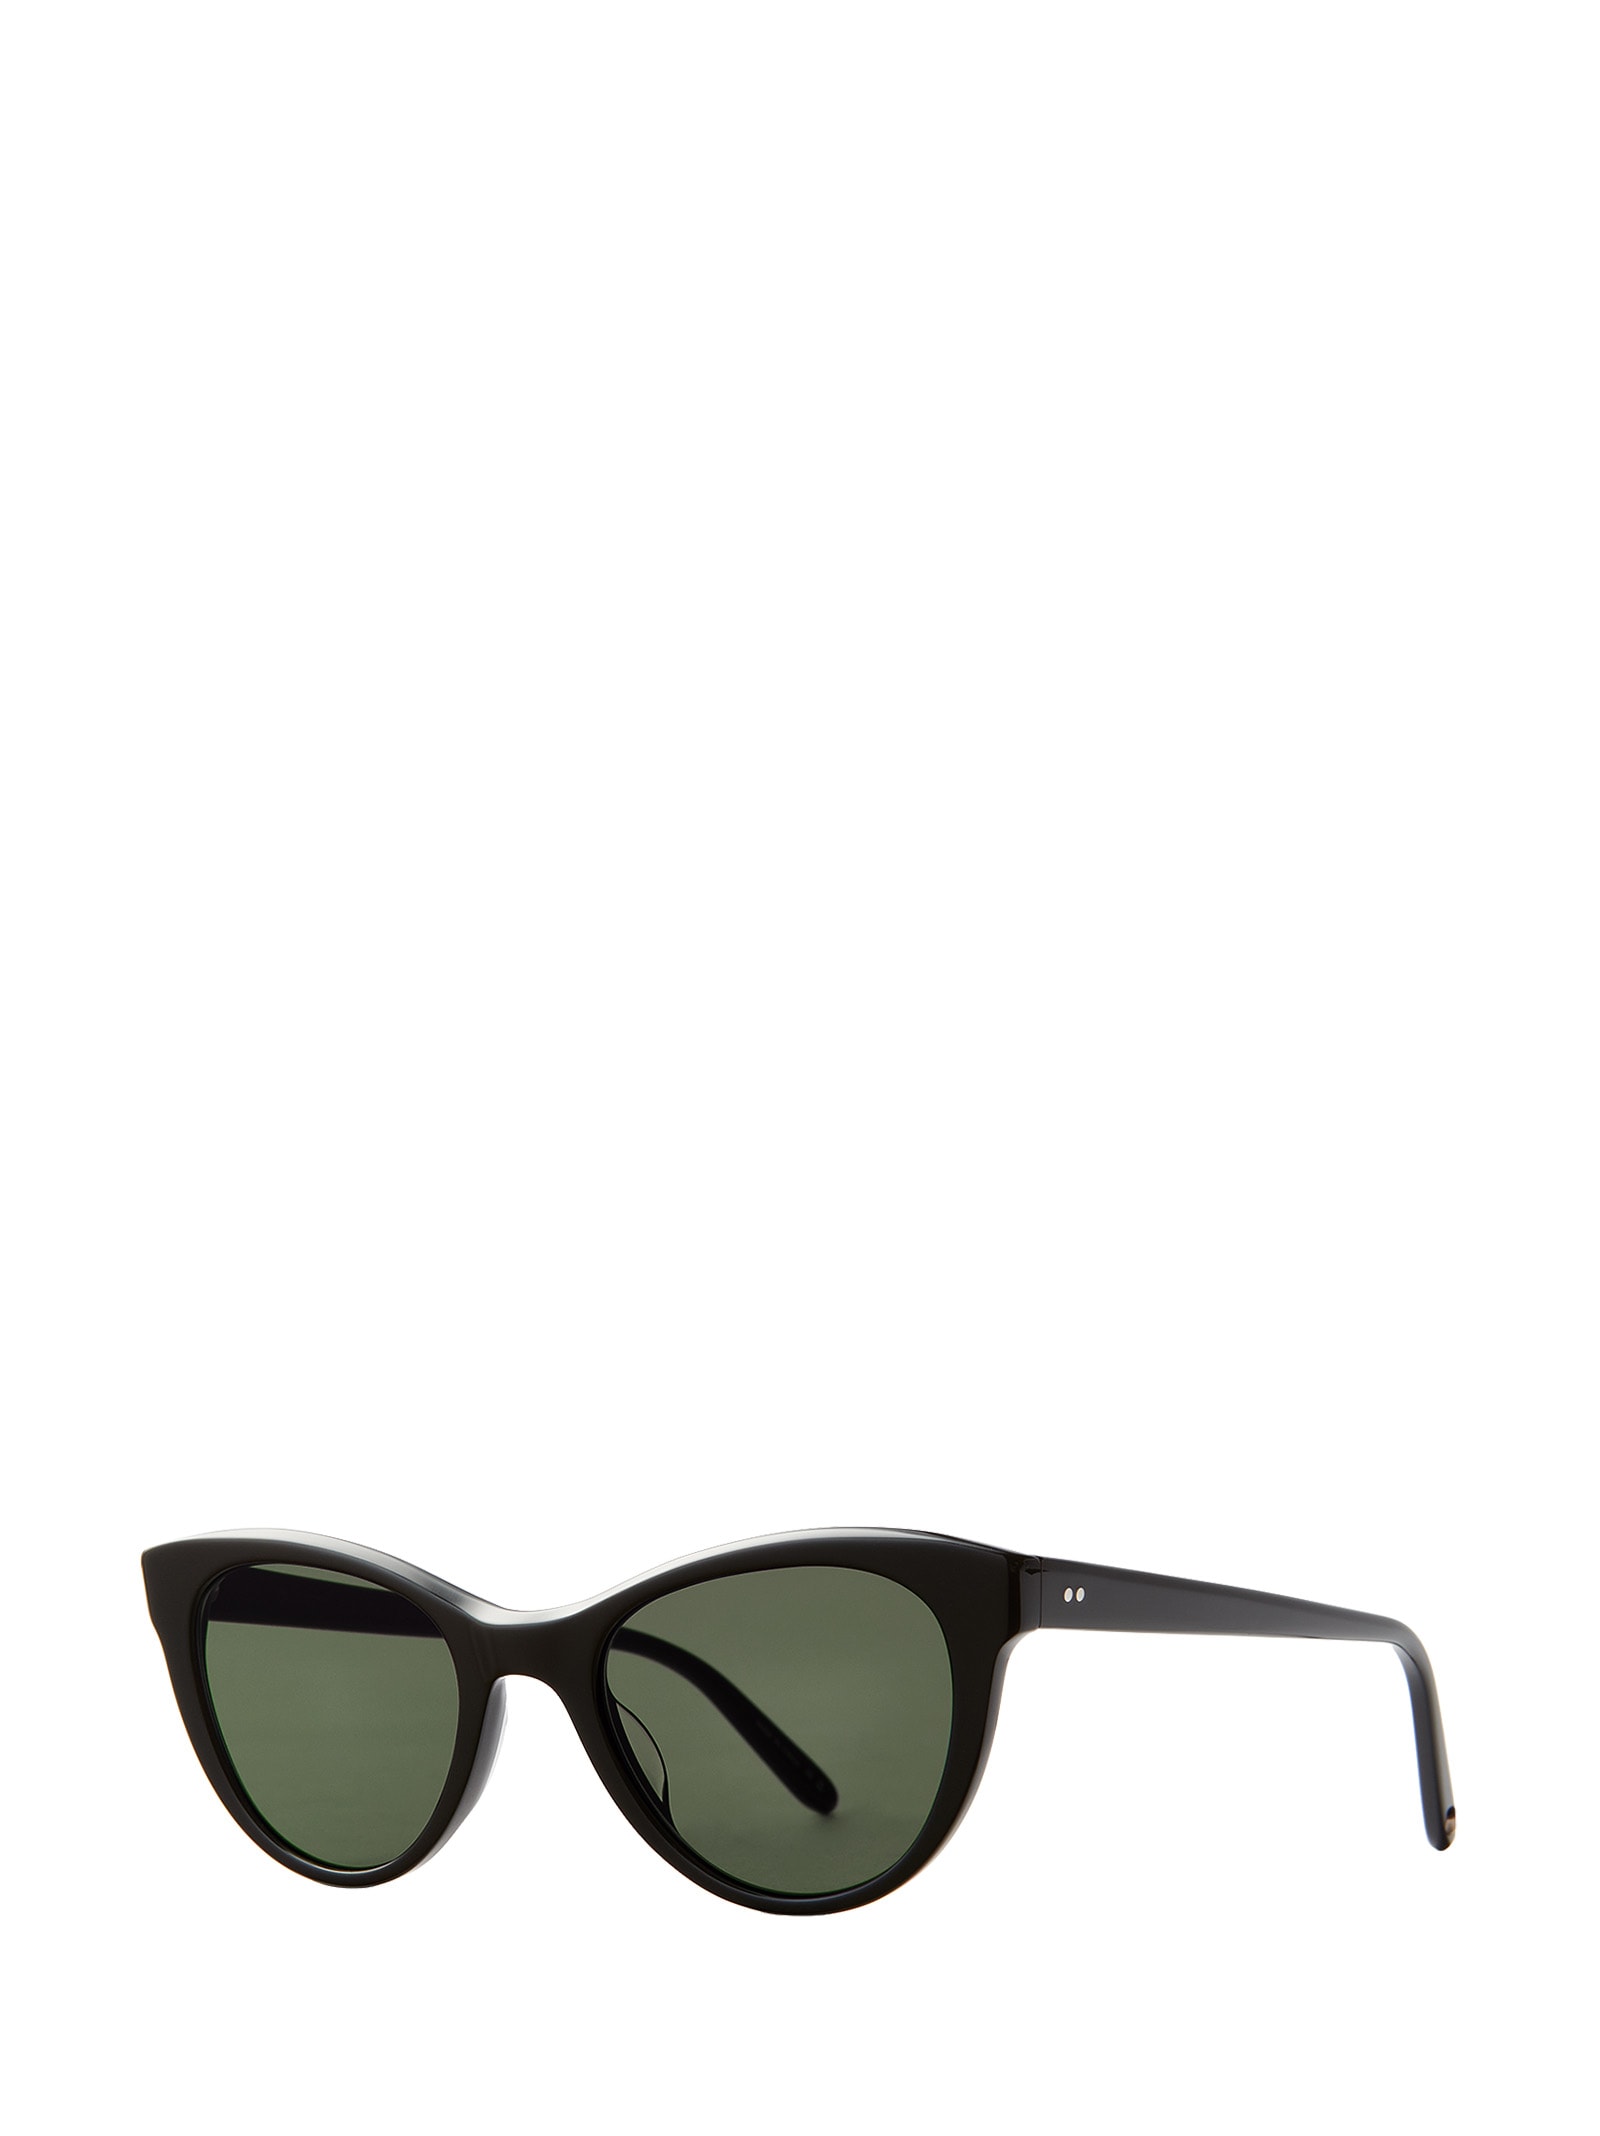 Shop Garrett Leight Glco X Clare V. Sun Bio Black Sunglasses